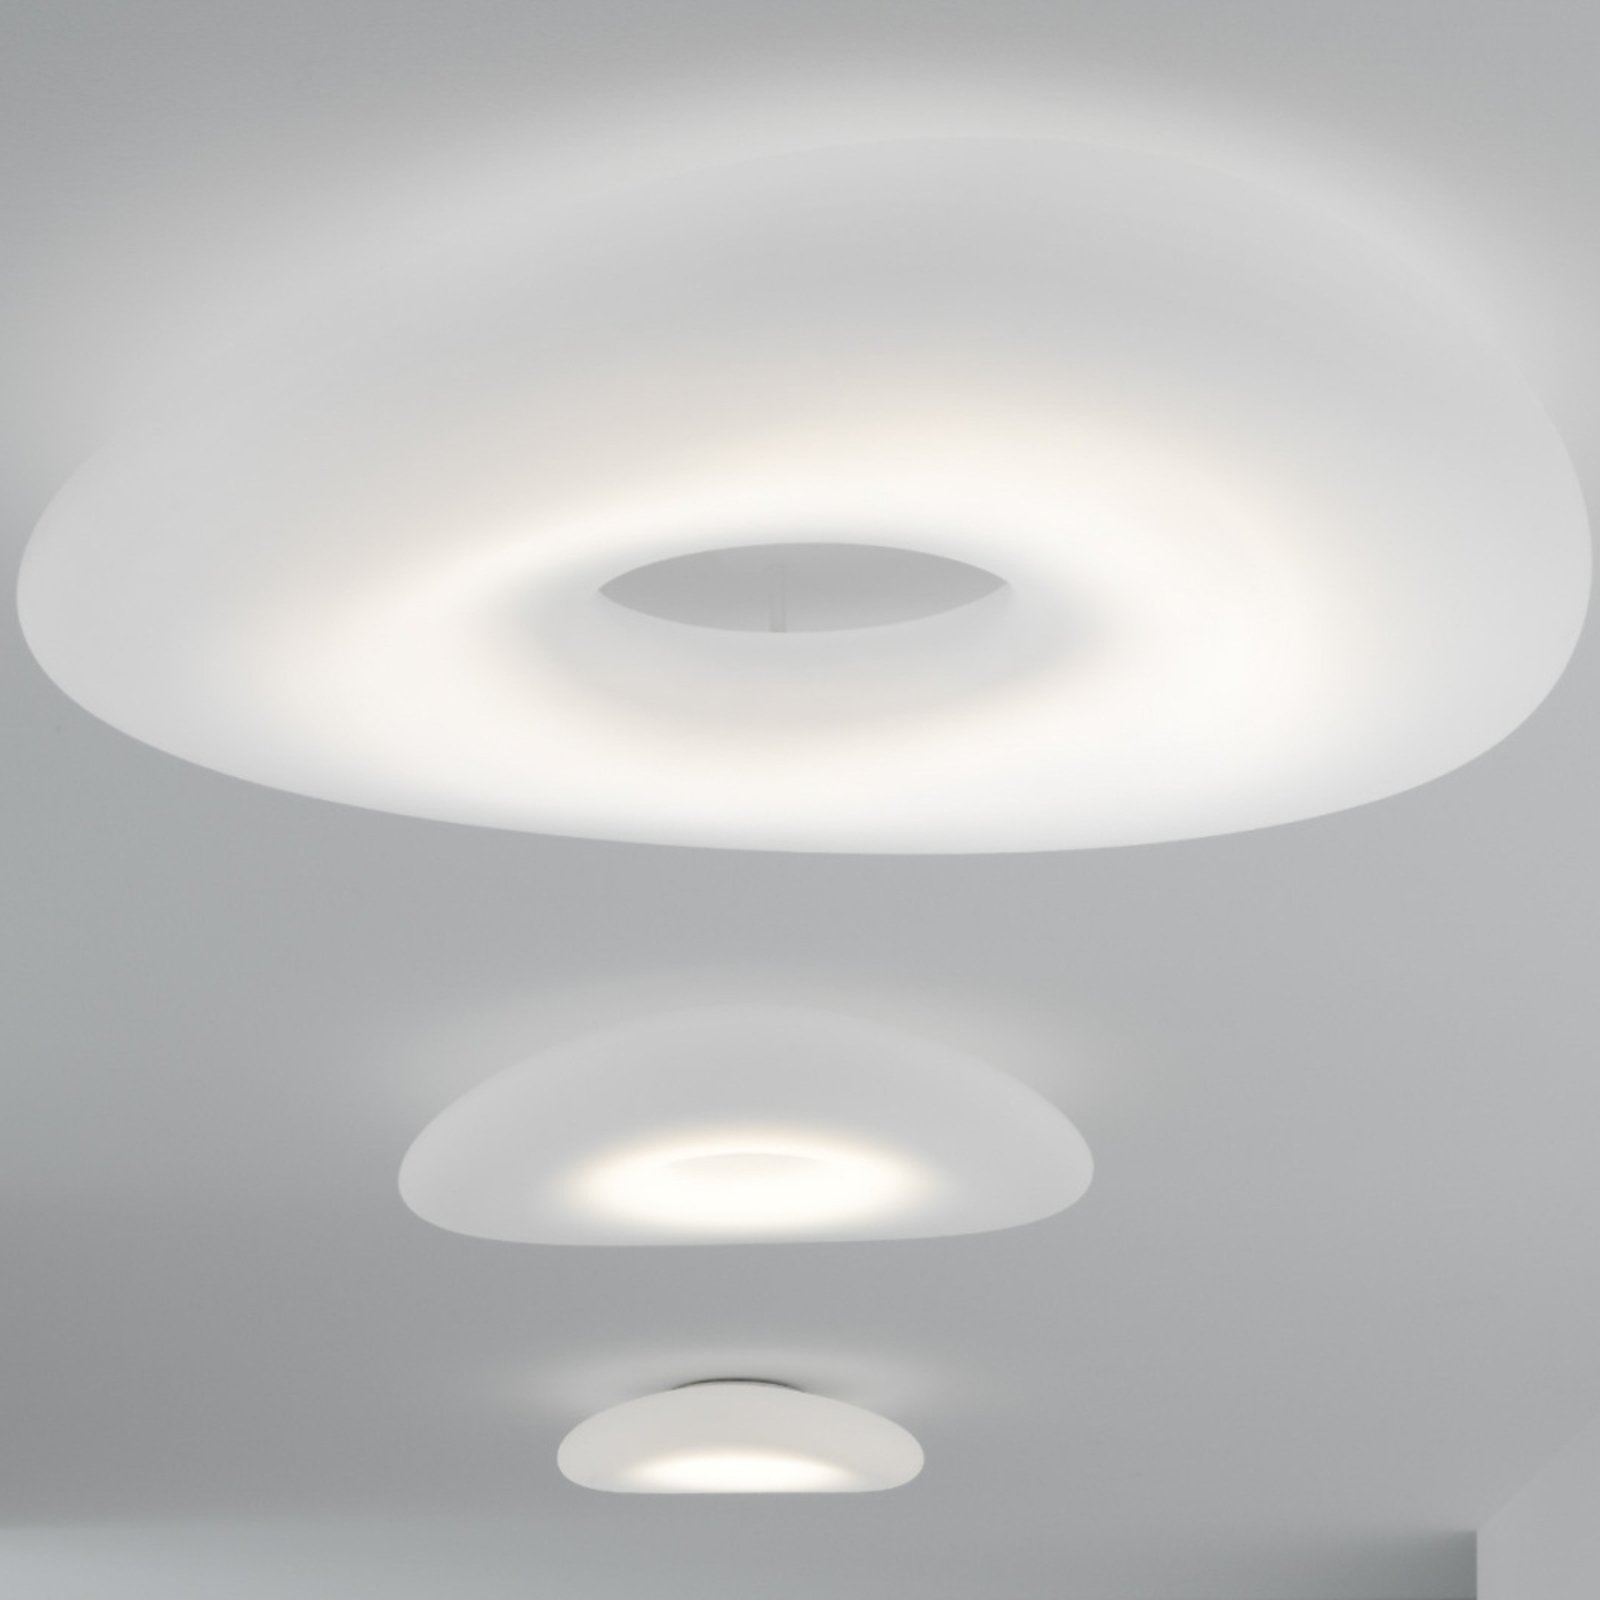 Stilnovo Mr. Magoo plafonnier LED, DALI, Ø 115 cm